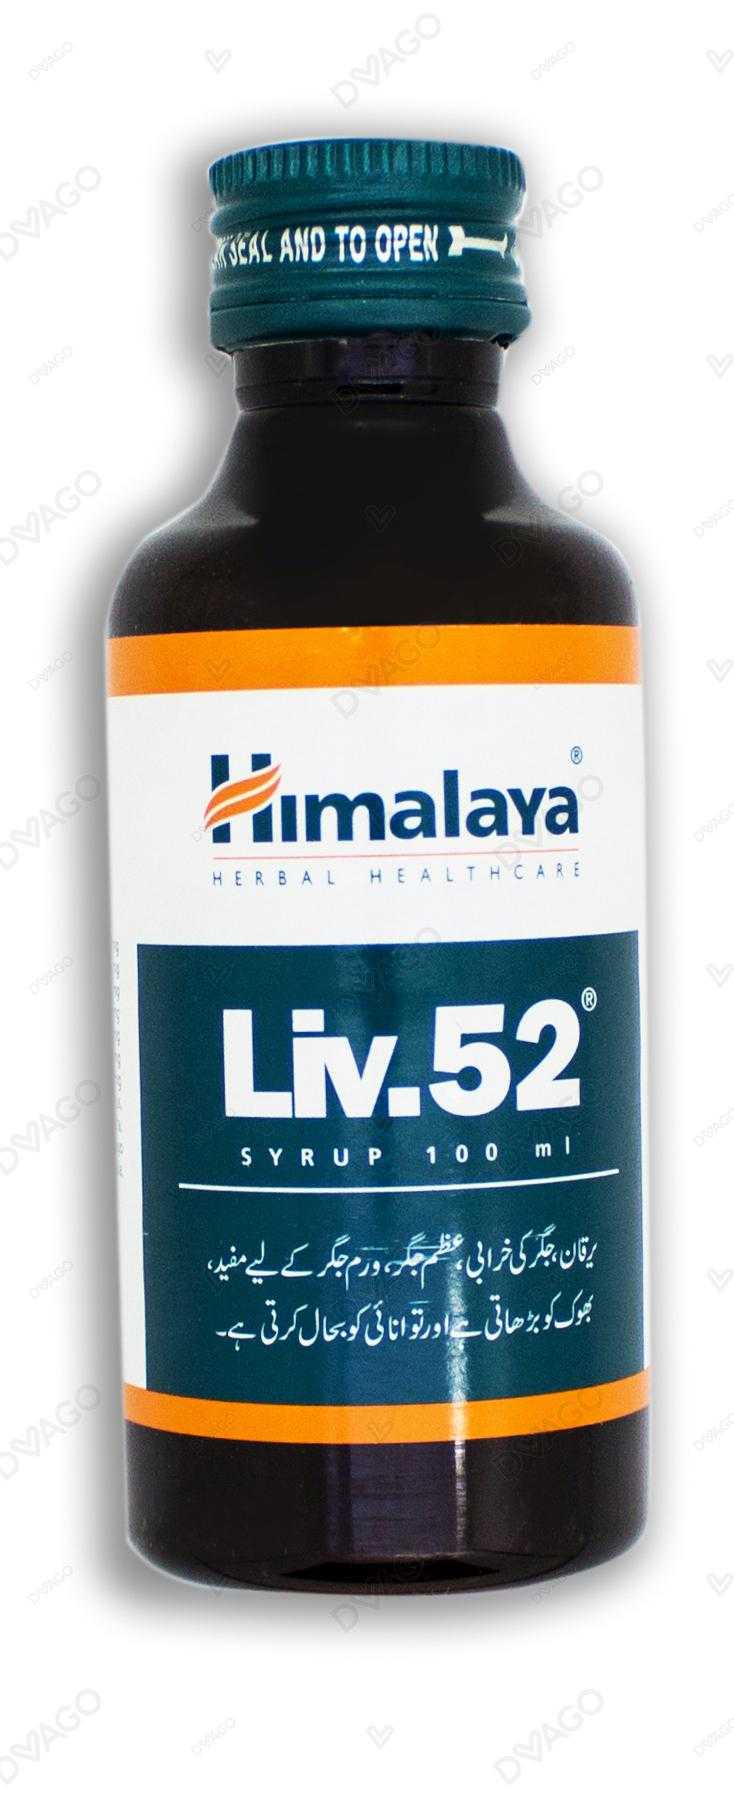 Himalaya Liv.52 Oral Drops 60 ml